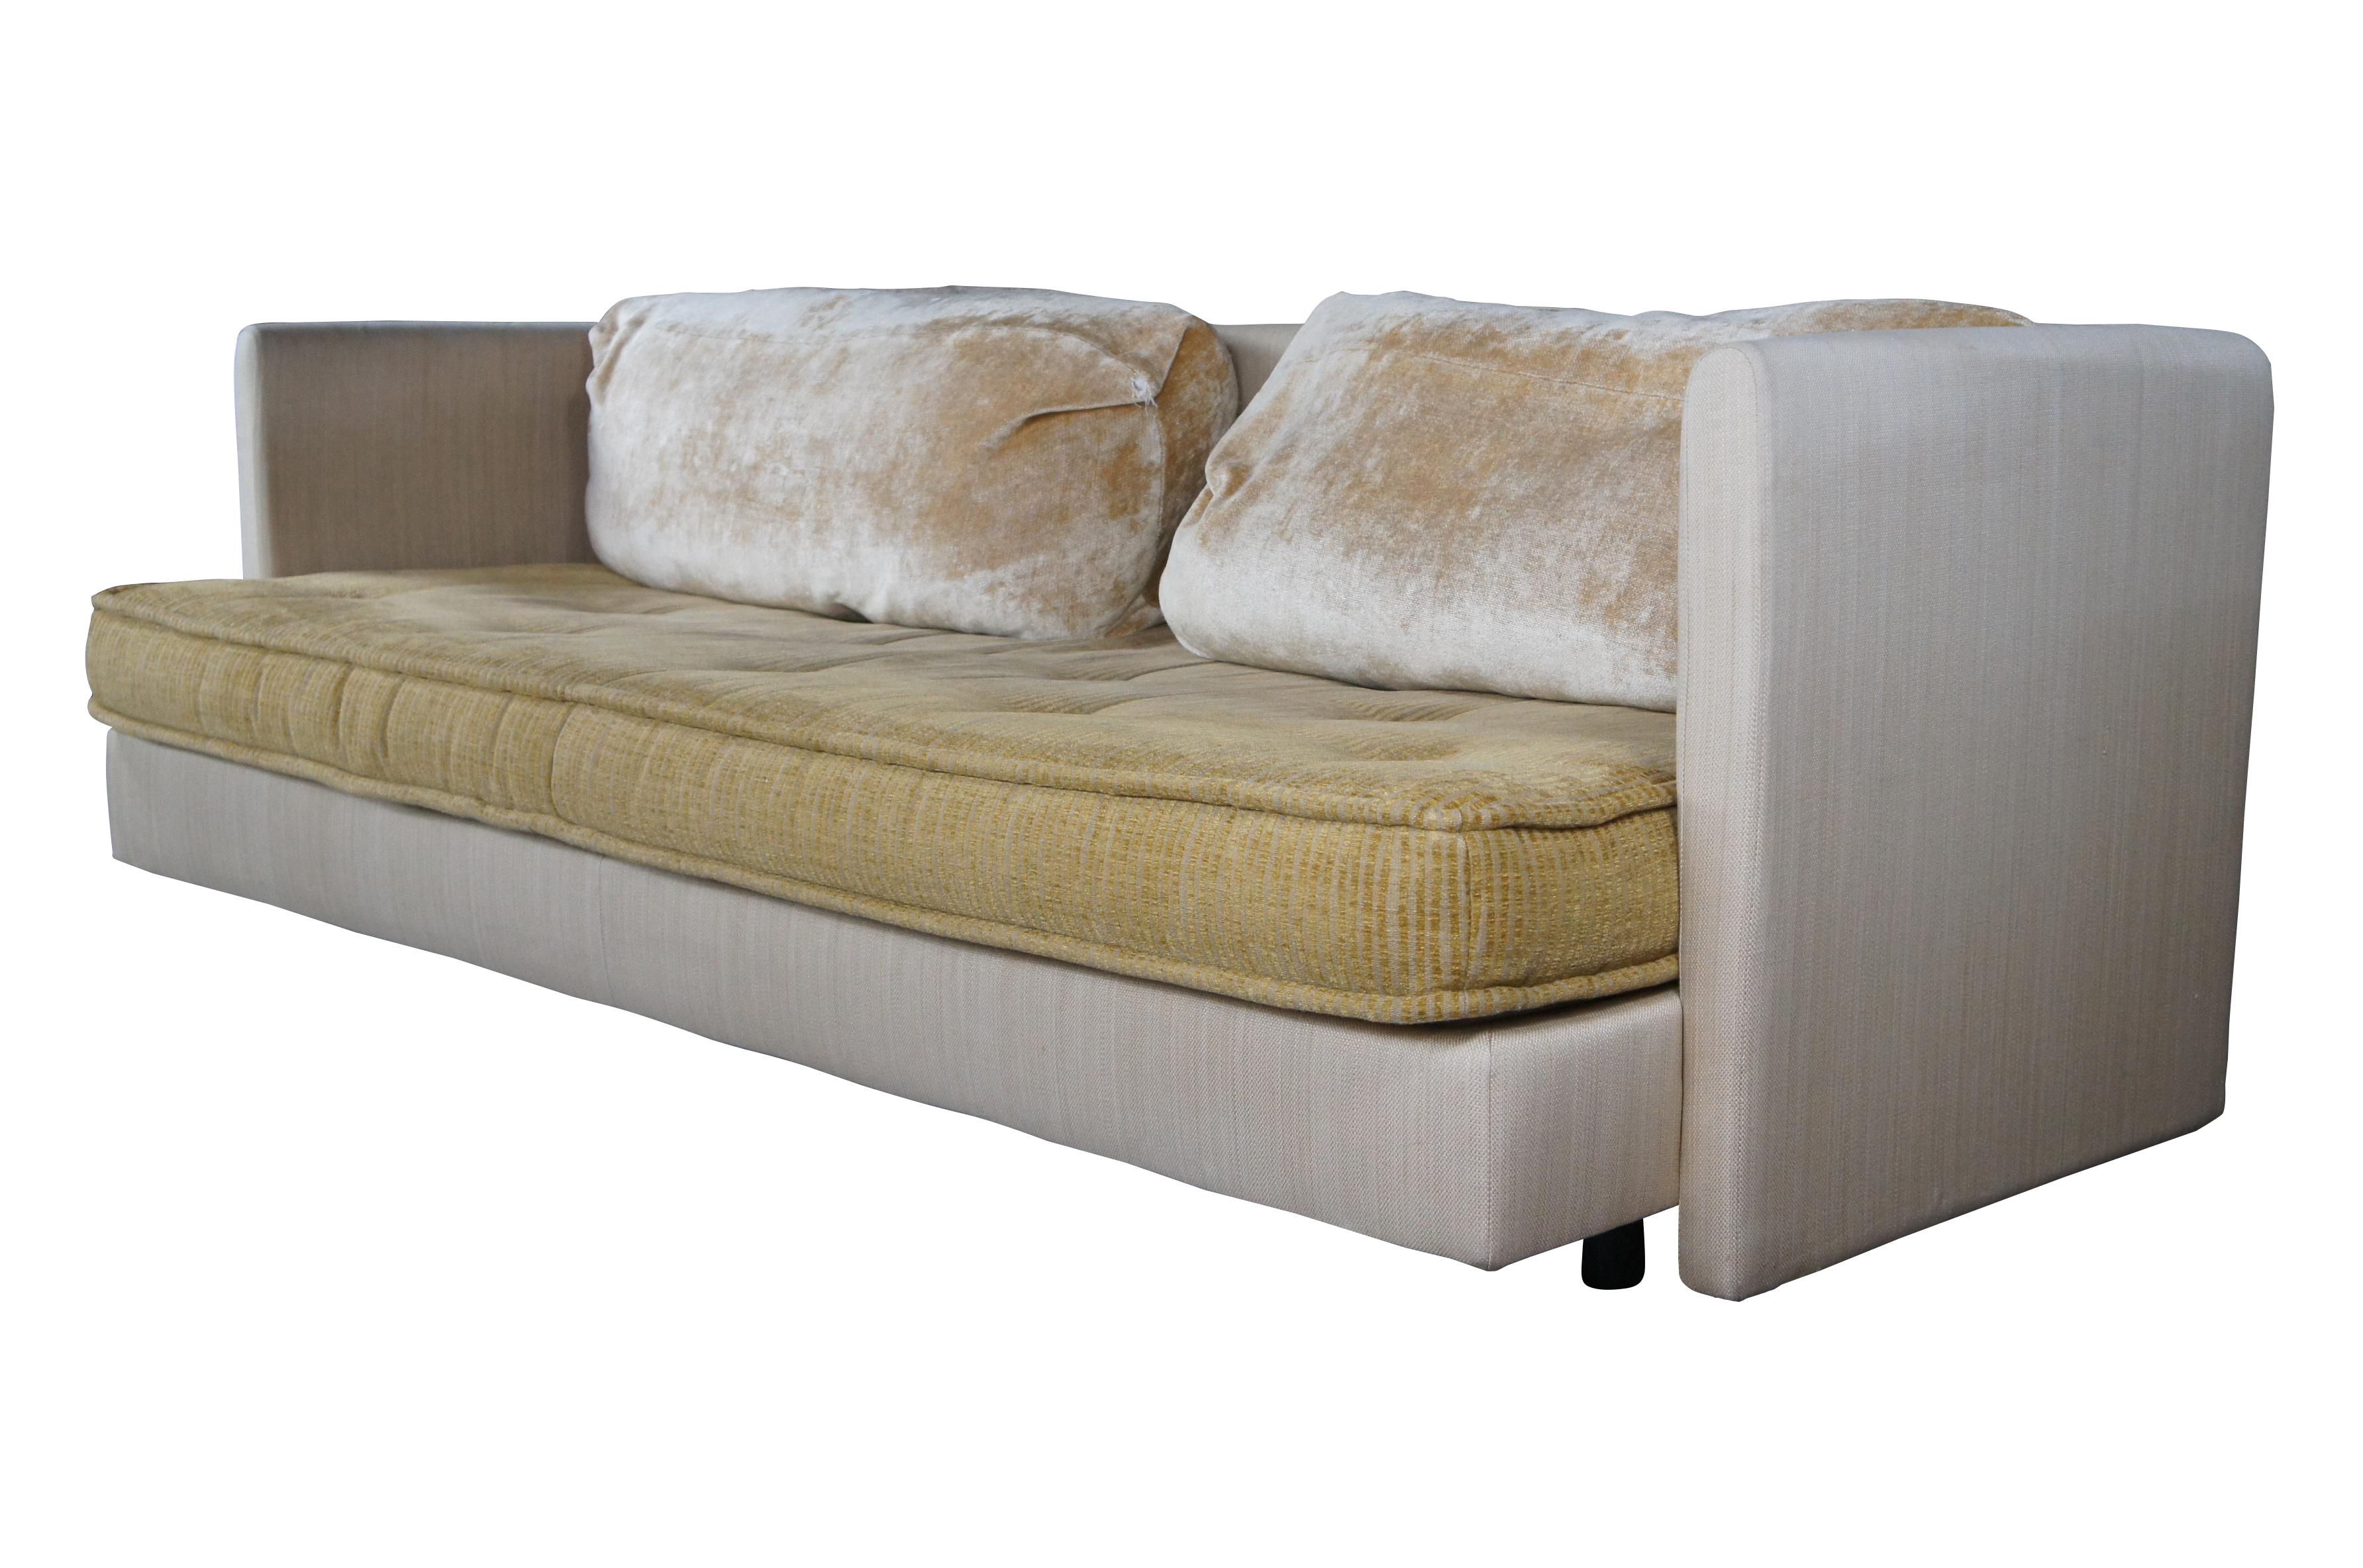 Ligne Roset ist ein Familienunternehmen, das für sein modernes Design bekannt ist. Dieses wunderschöne Sofa ist ein Beispiel dafür. Der geschmackvolle Bezug aus einem Baumwoll-Leinen-Gemisch und Alcantara-Veloursleder bietet einen weichen Griff und